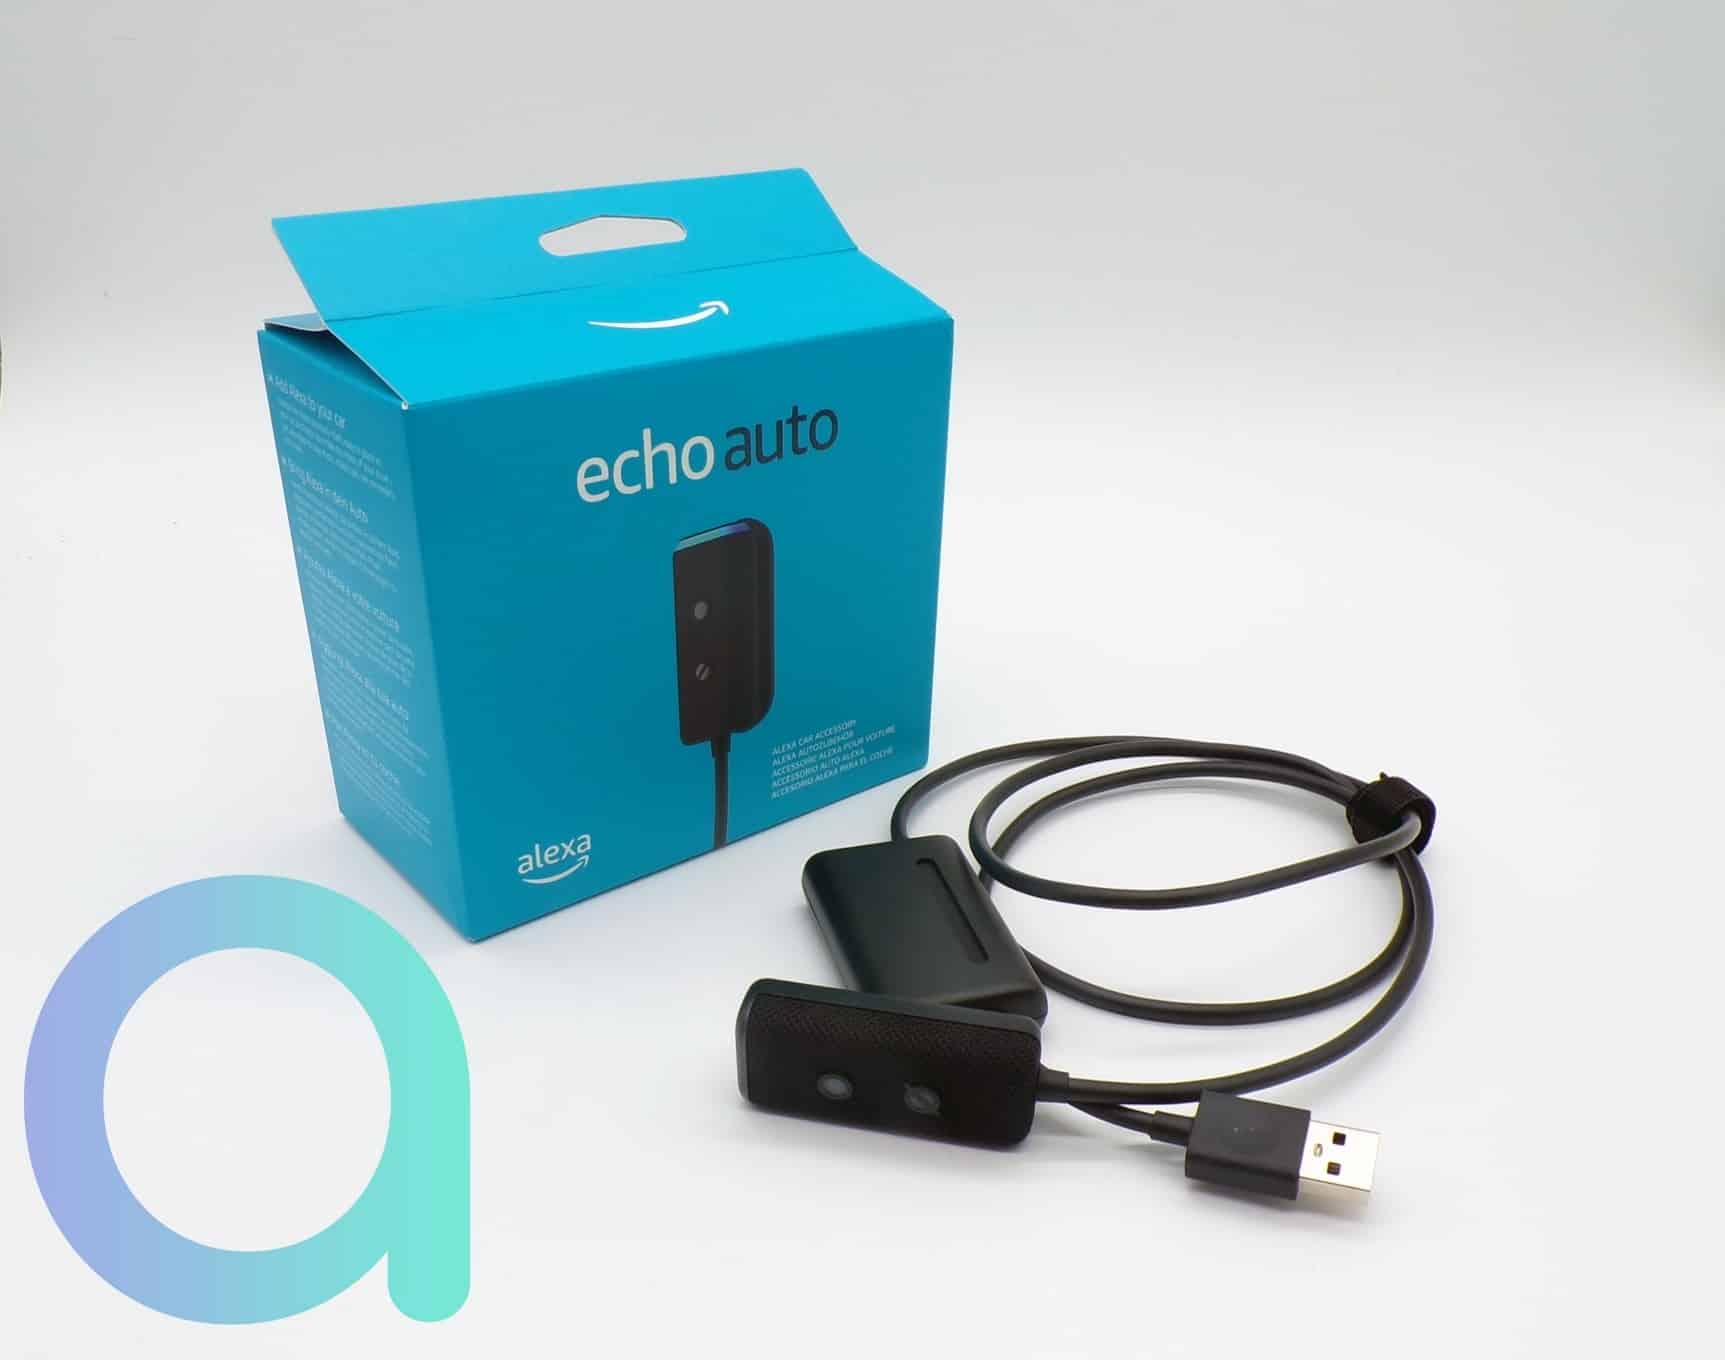  Alexa partout avec vous grâce à l'Echo Auto